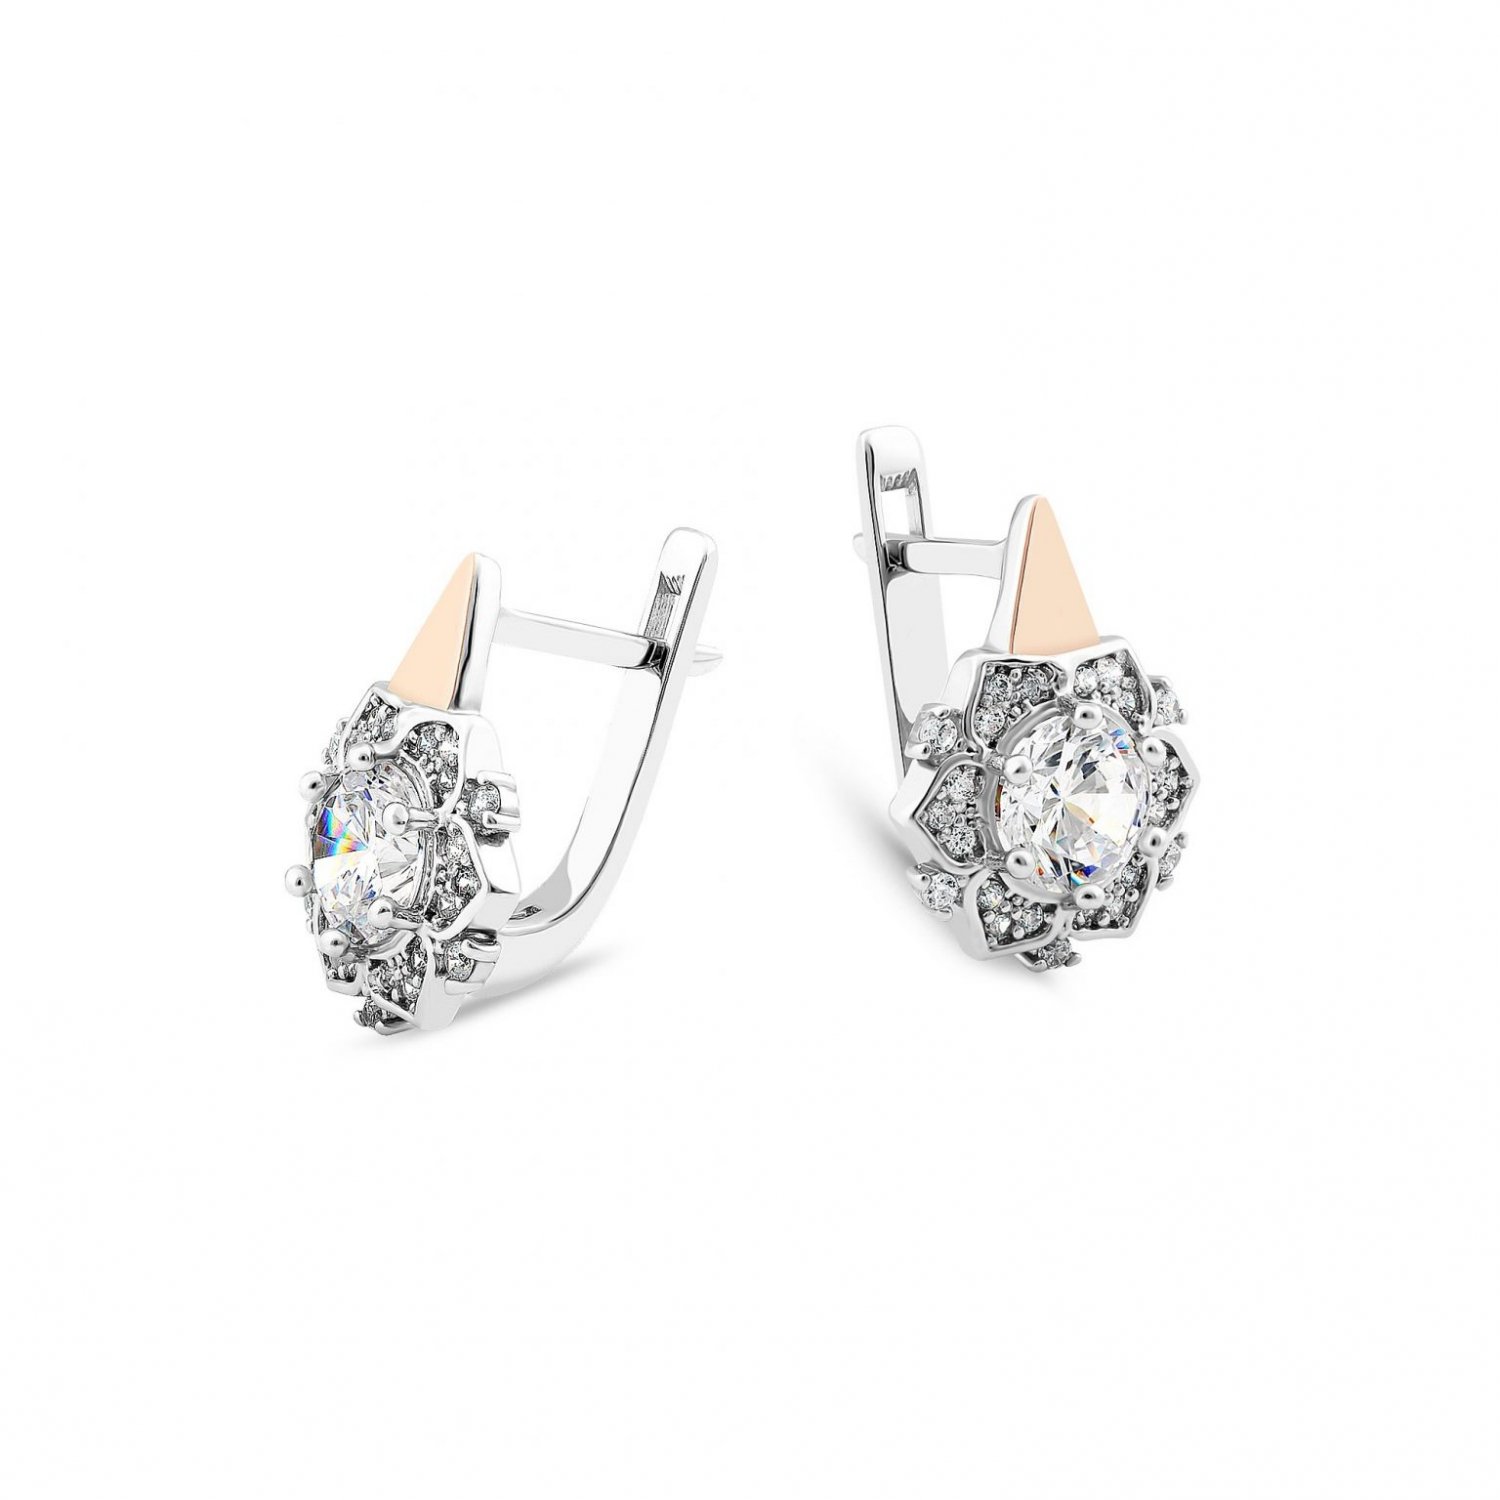 Svitozar earrings 724E